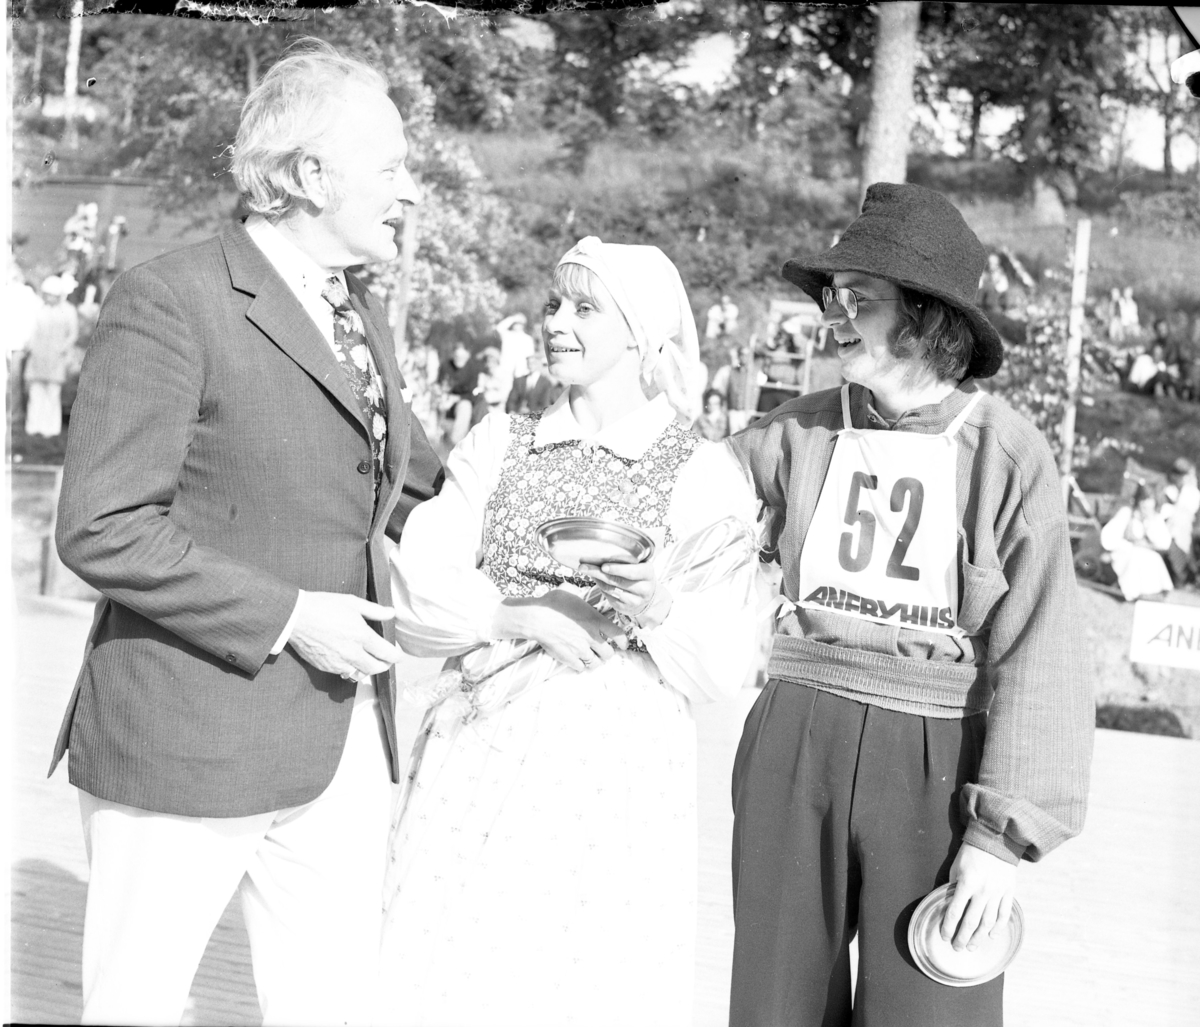 Grännapolkan på Grännaberget, 1975. Danspar nr 52, troligen segrarna Gunnel Johansson och Ola Holmberg från Uppsala intill man som troligen är prisutdelare. Dansparet har tennfat och stor polkagris i famnen.